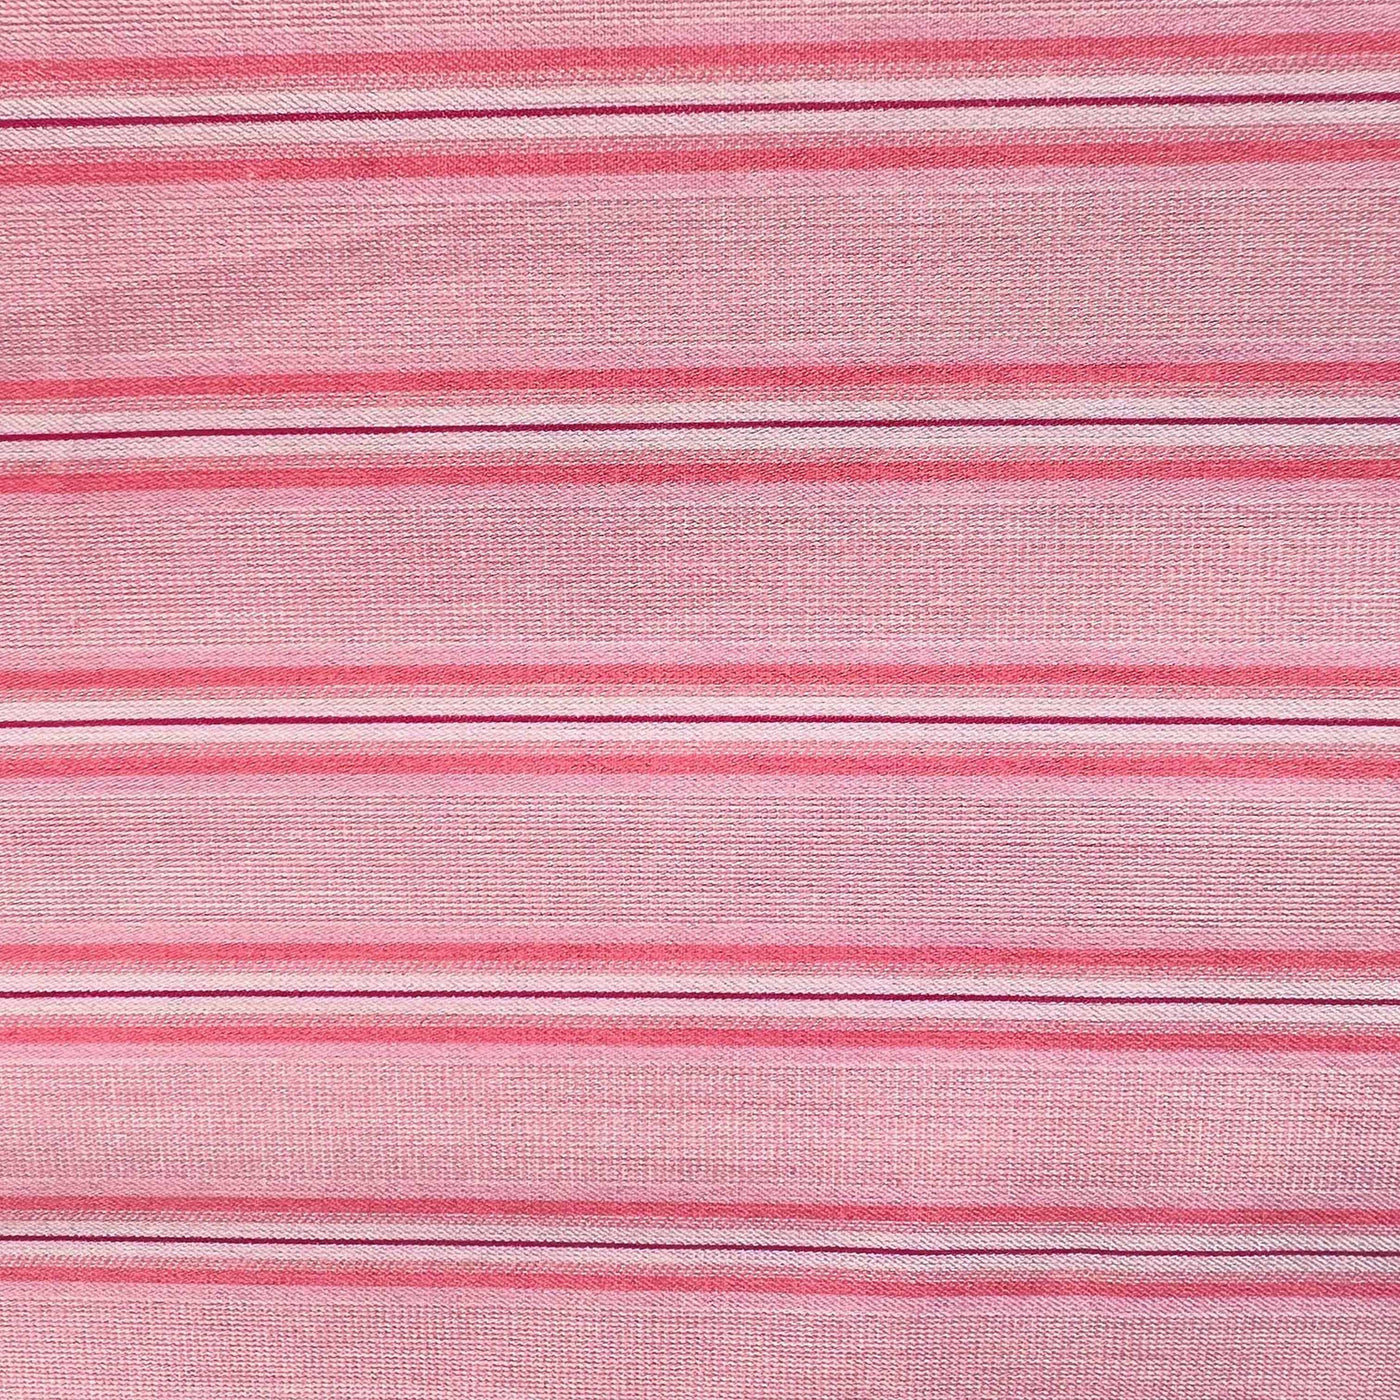 COTTON PERCALE stripe bedding Pink shirt stripe